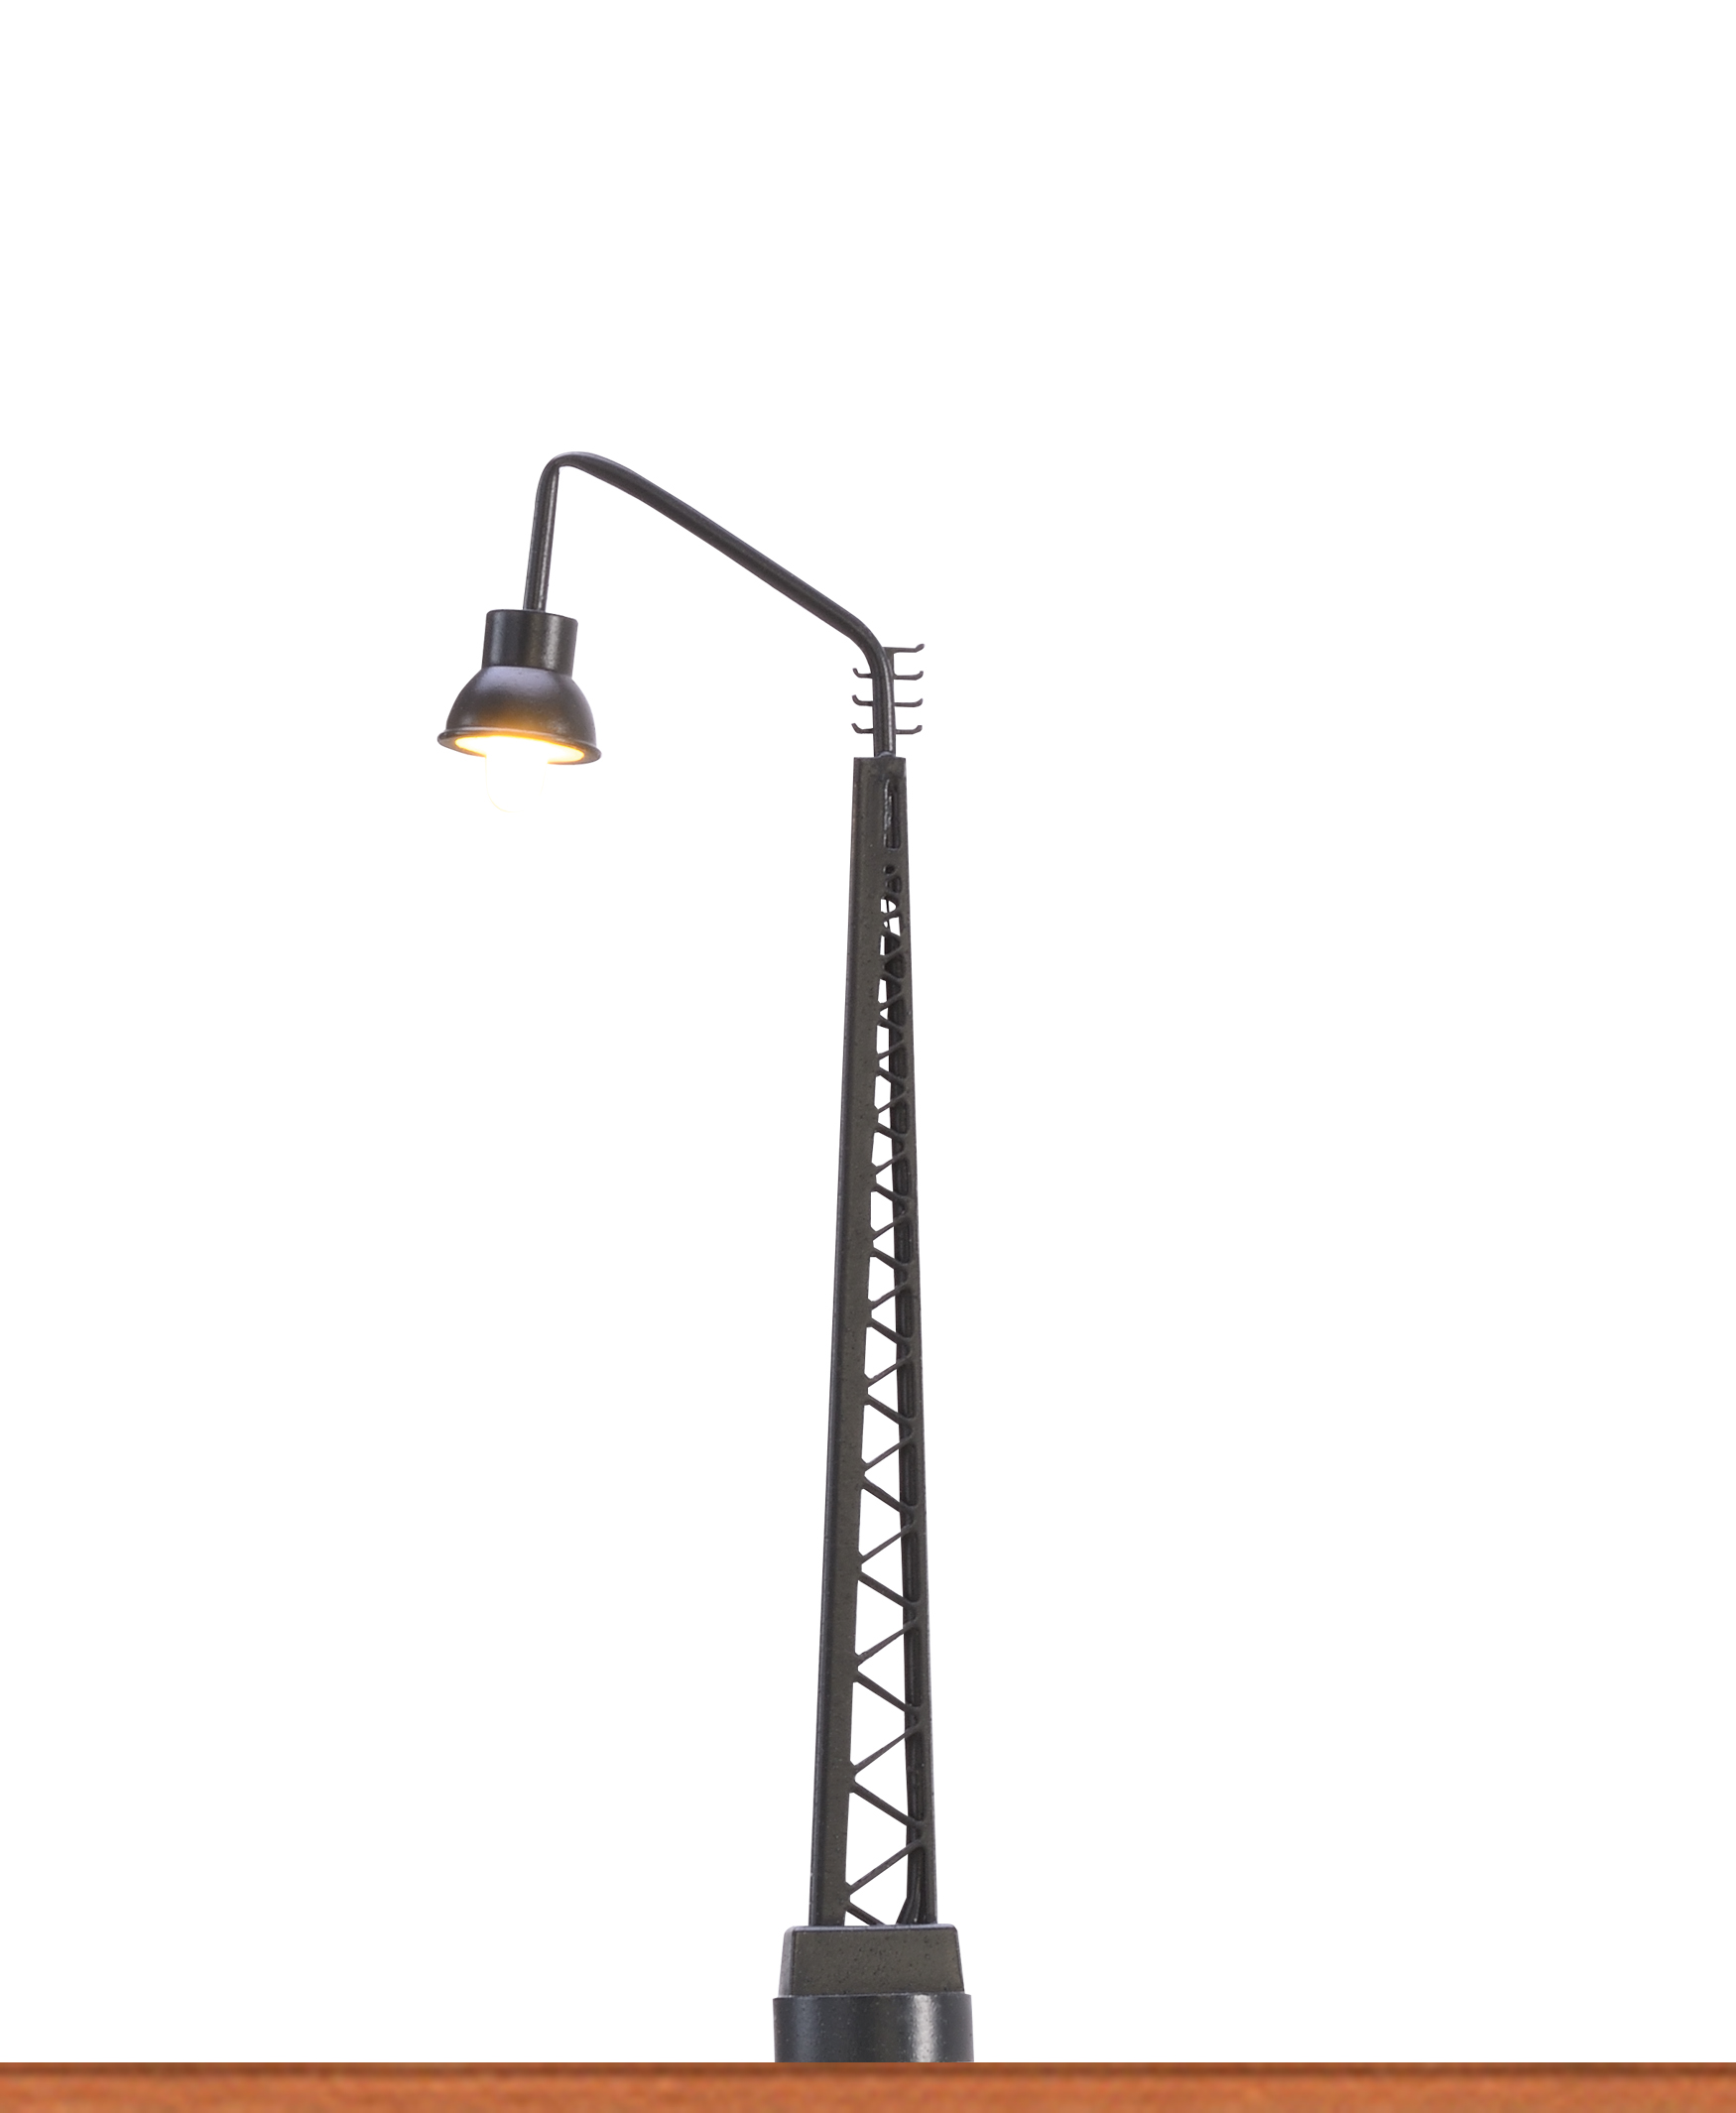 Gittermastleuchte LED, Stecksockeltechnik, Höhe 70 mm, N